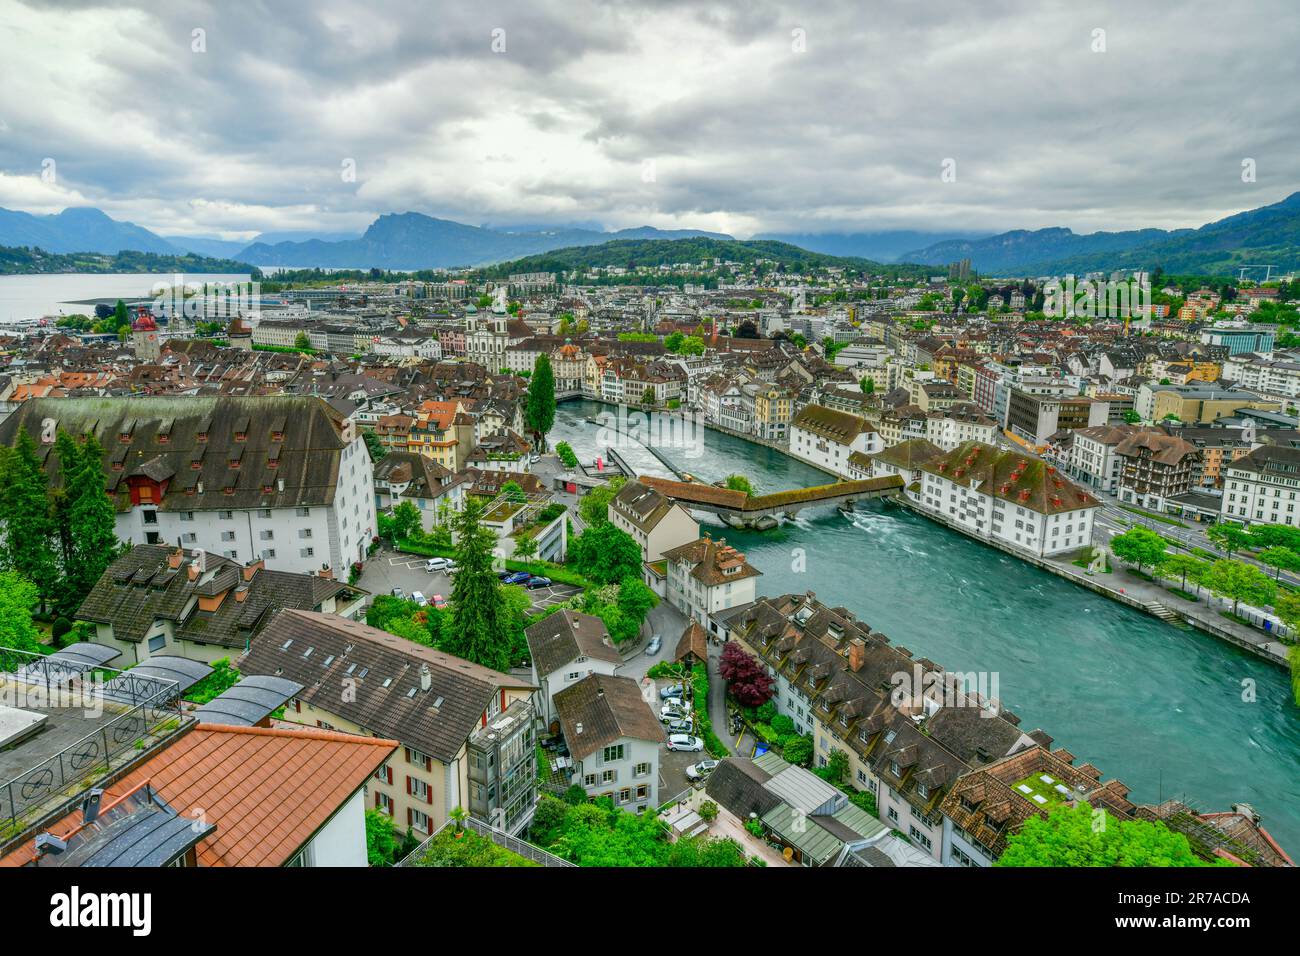 Vue imprenable sur le centre-ville historique de Lucerne, Suisse. Banque D'Images